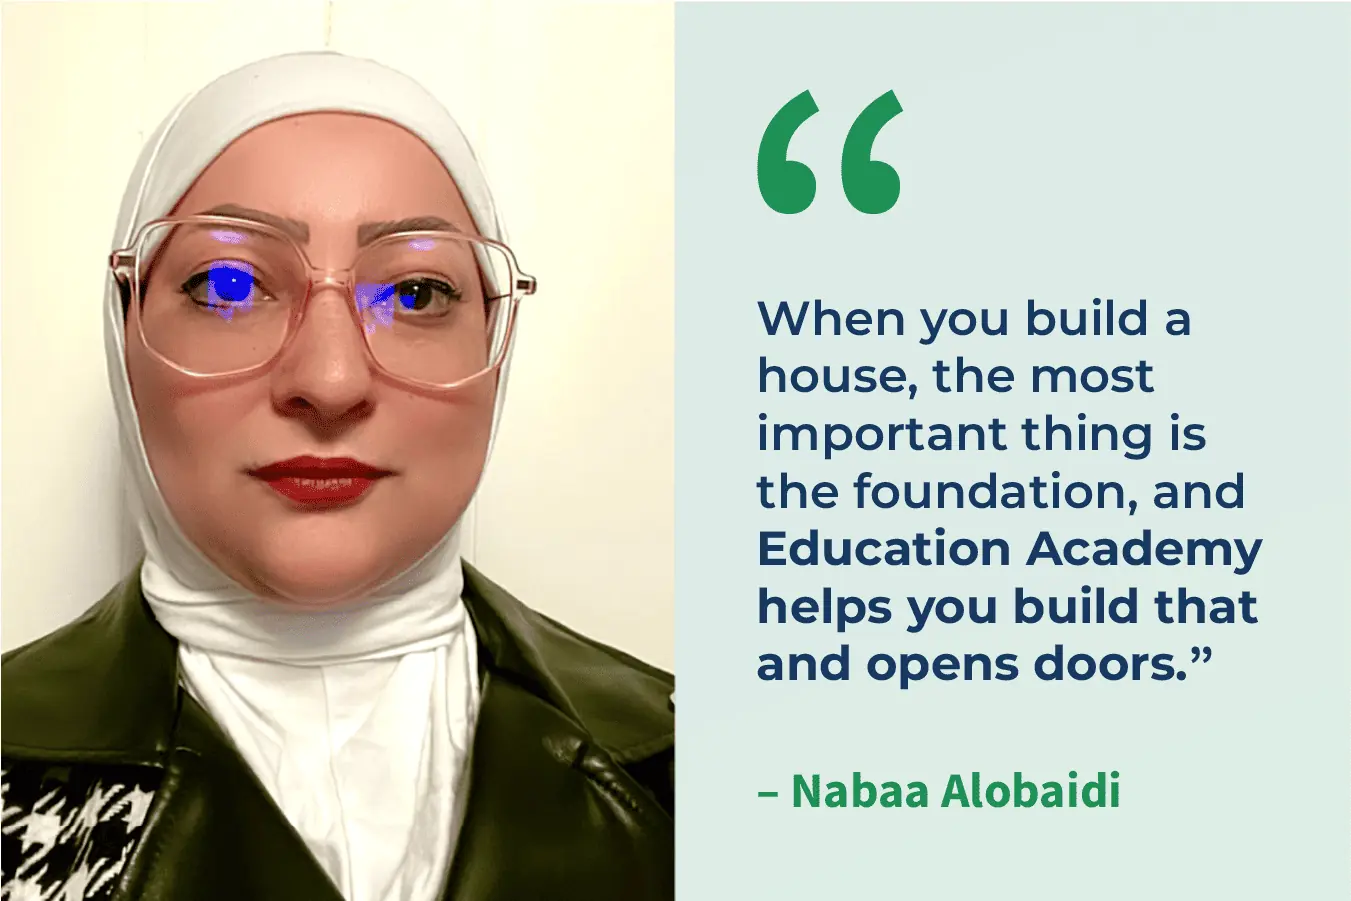 Headshot of Nabaa Alobaidi and quote